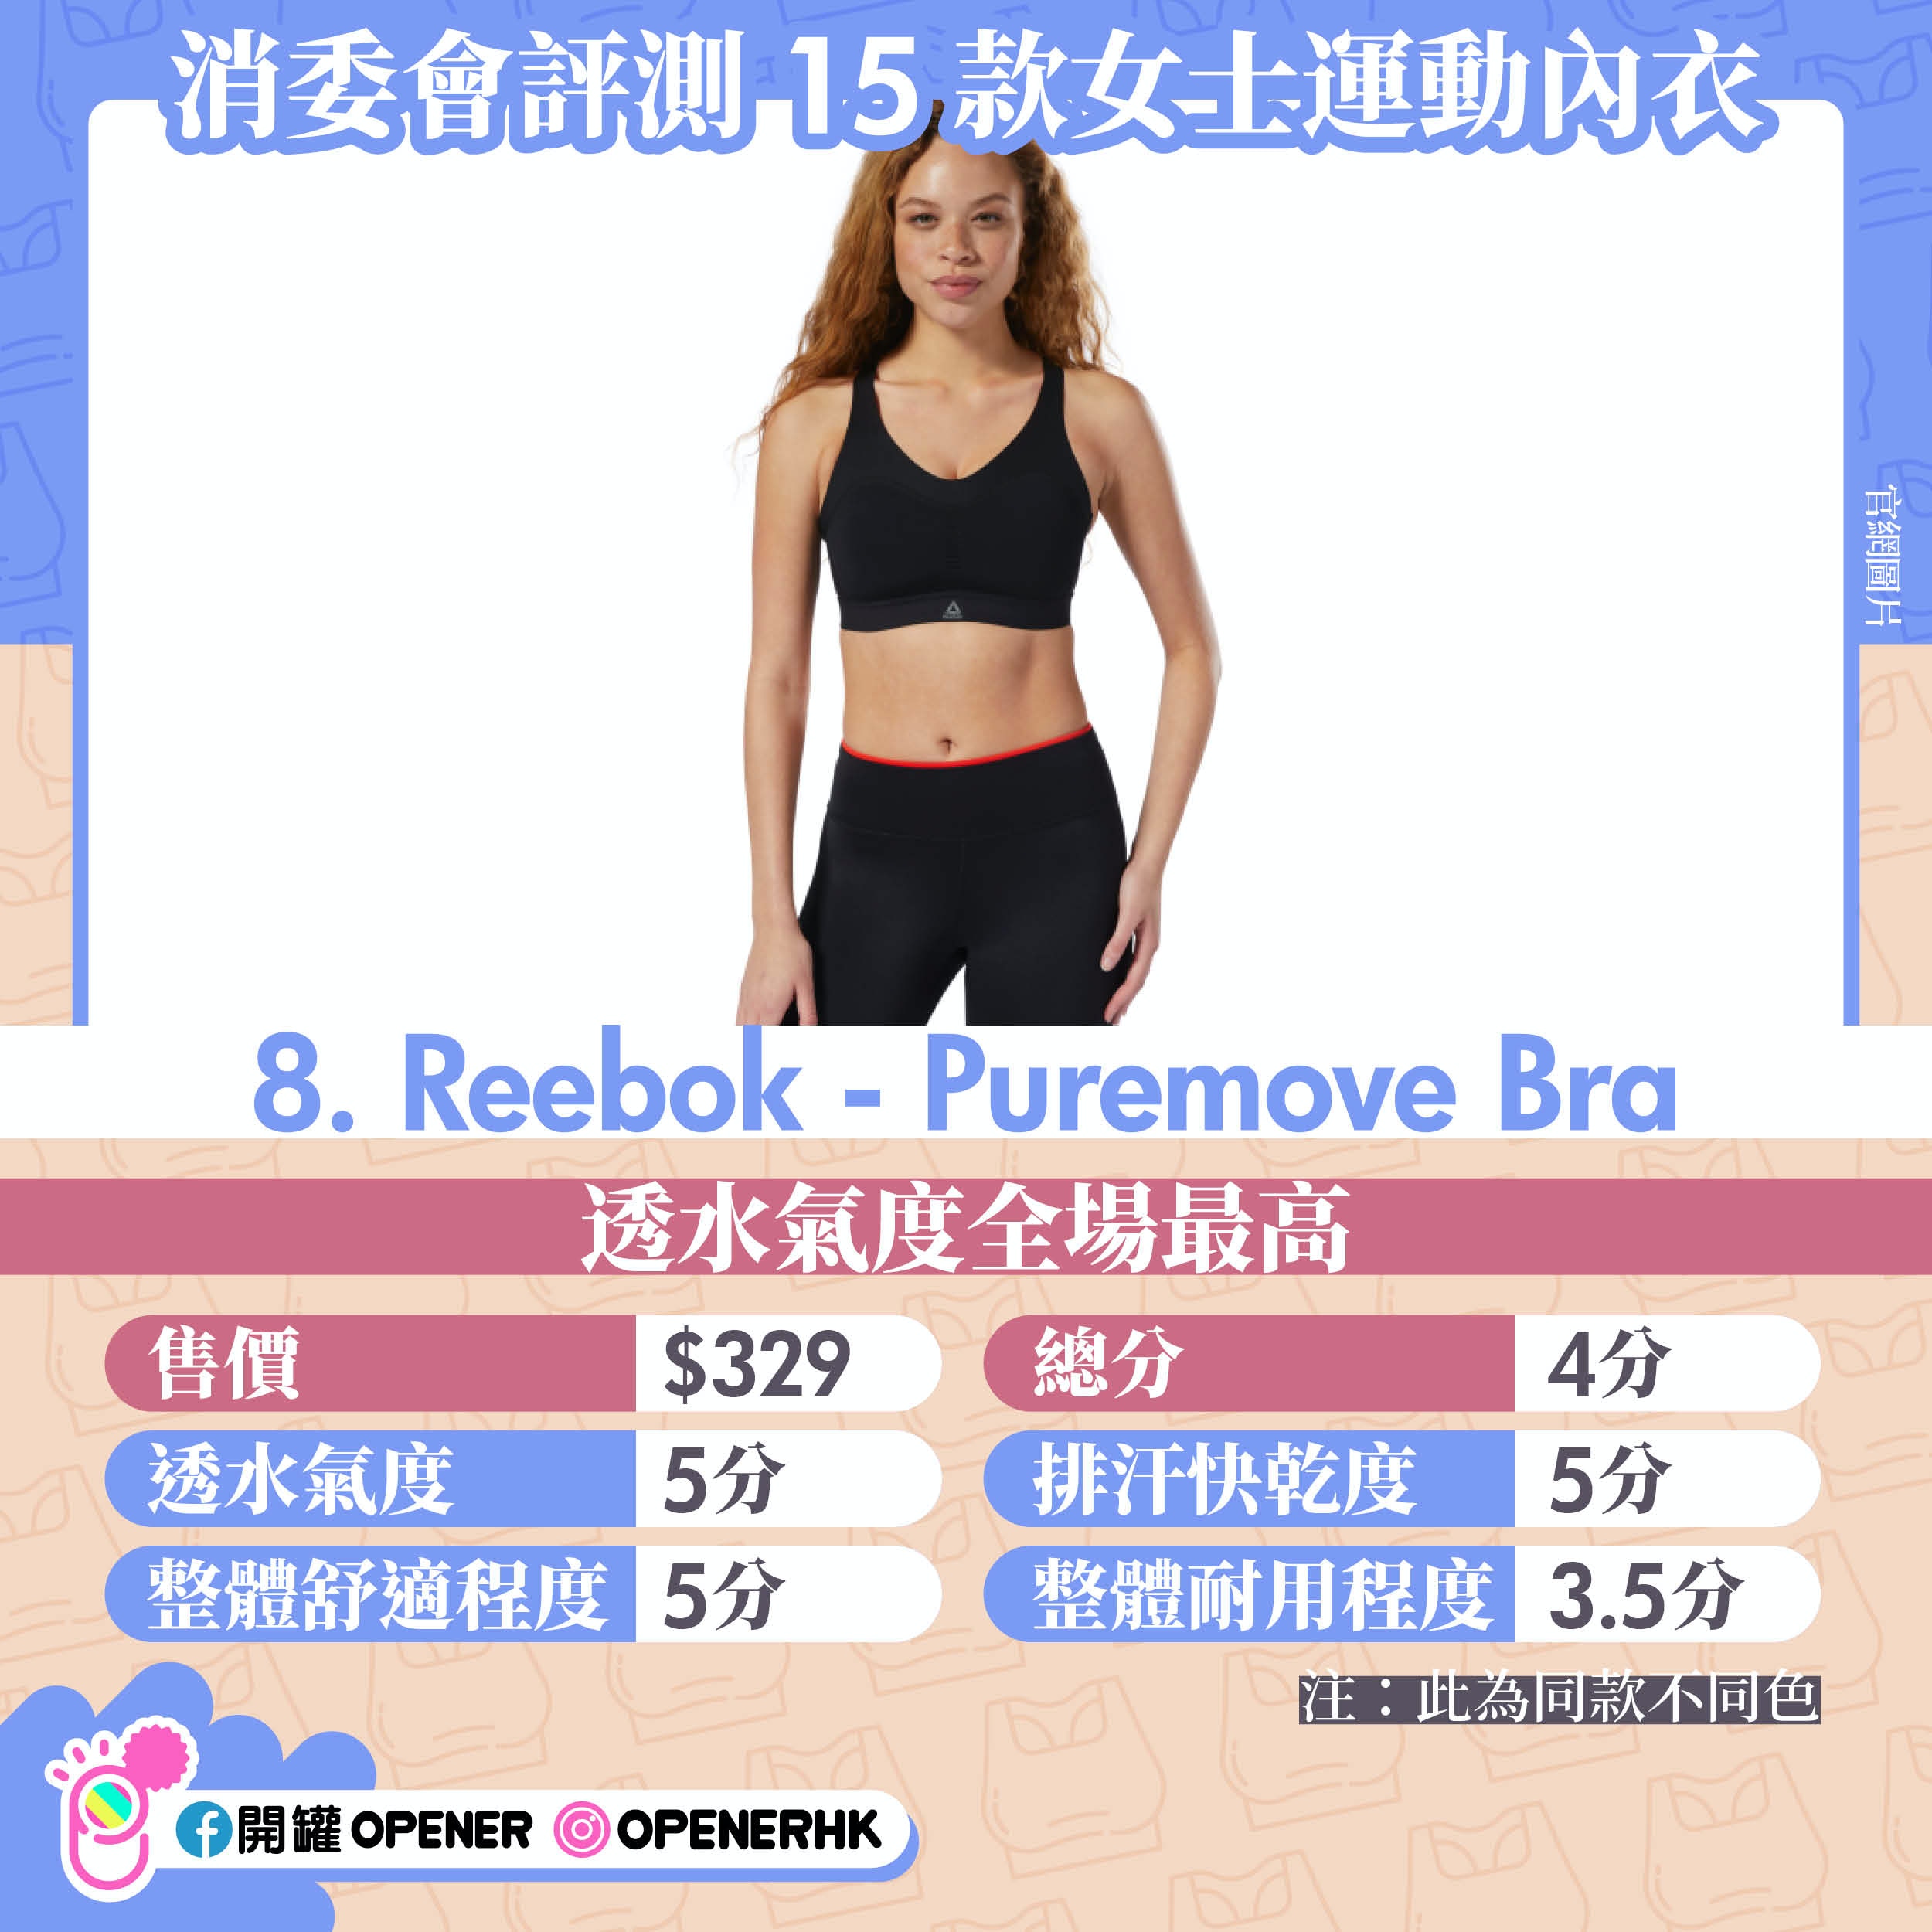 Reebok Pure Move Bra Size Chart